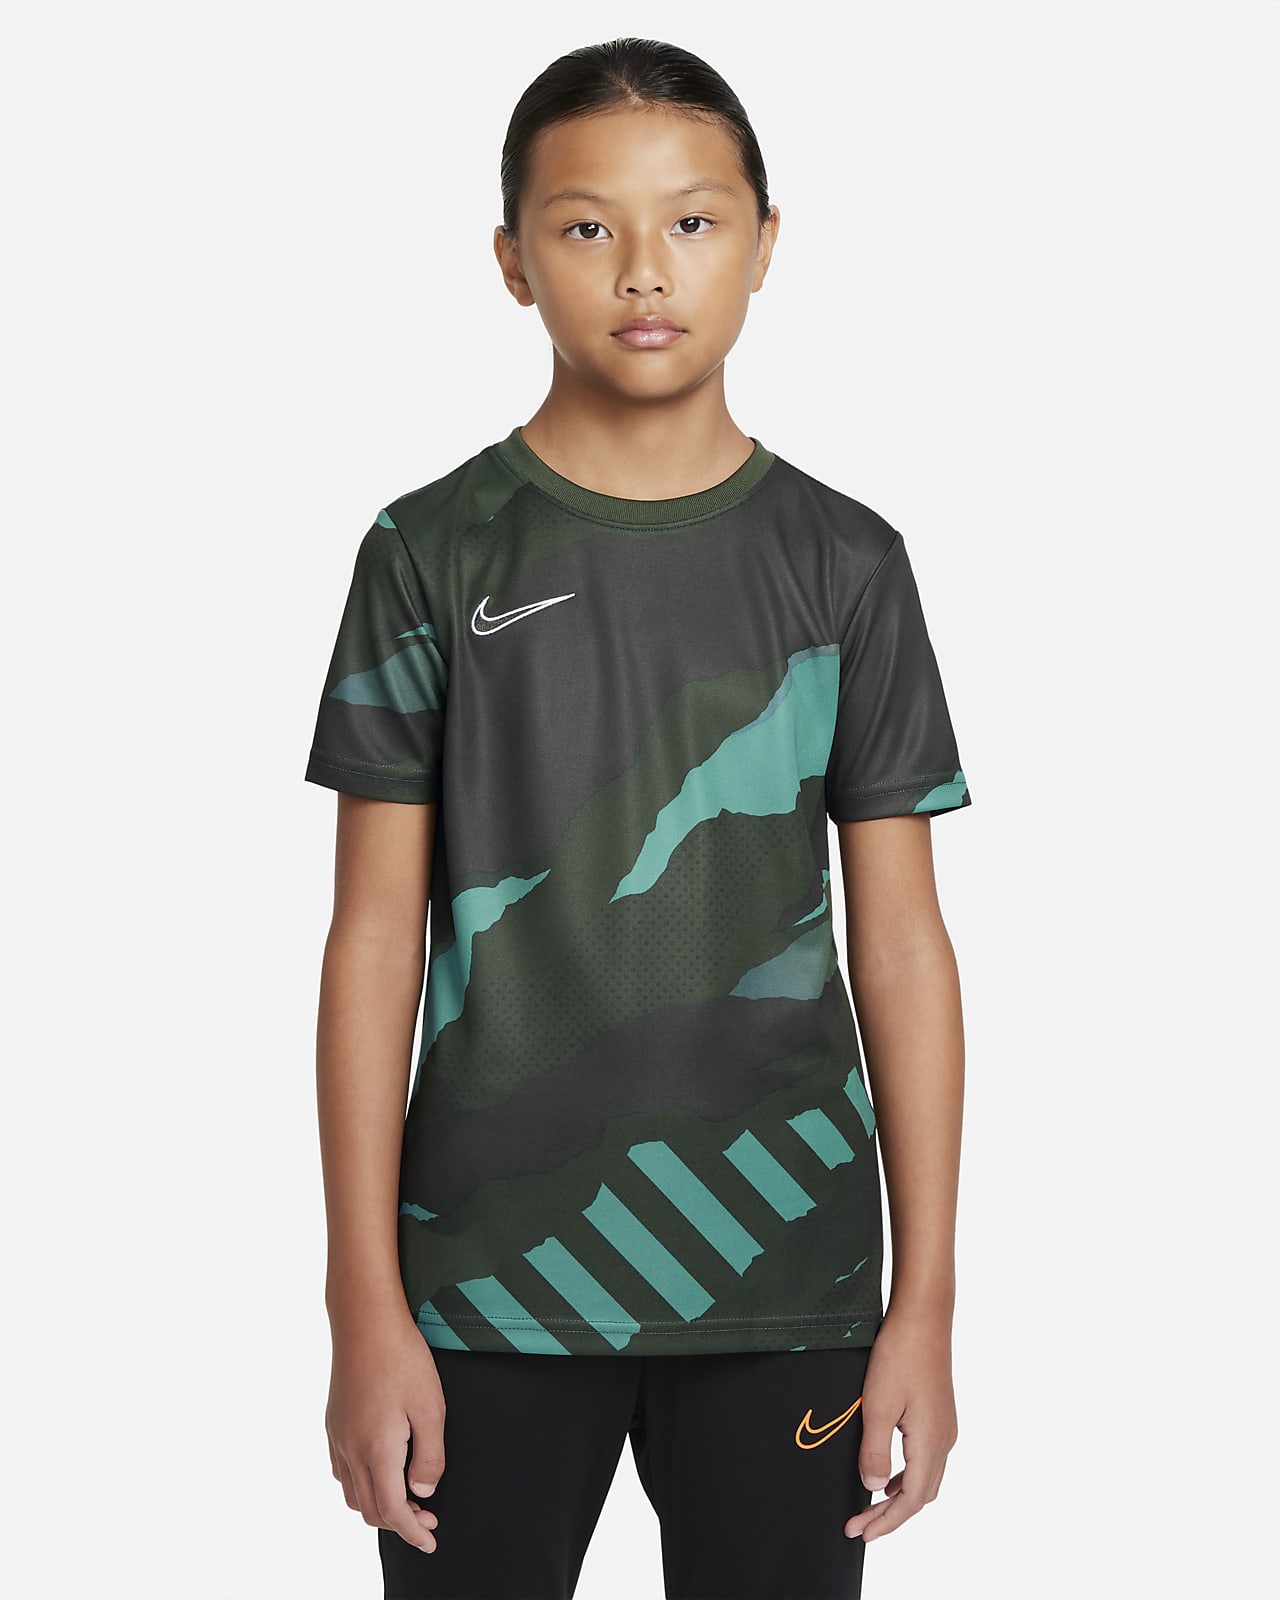 Nike Older Kids' Short-Sleeve Football Top